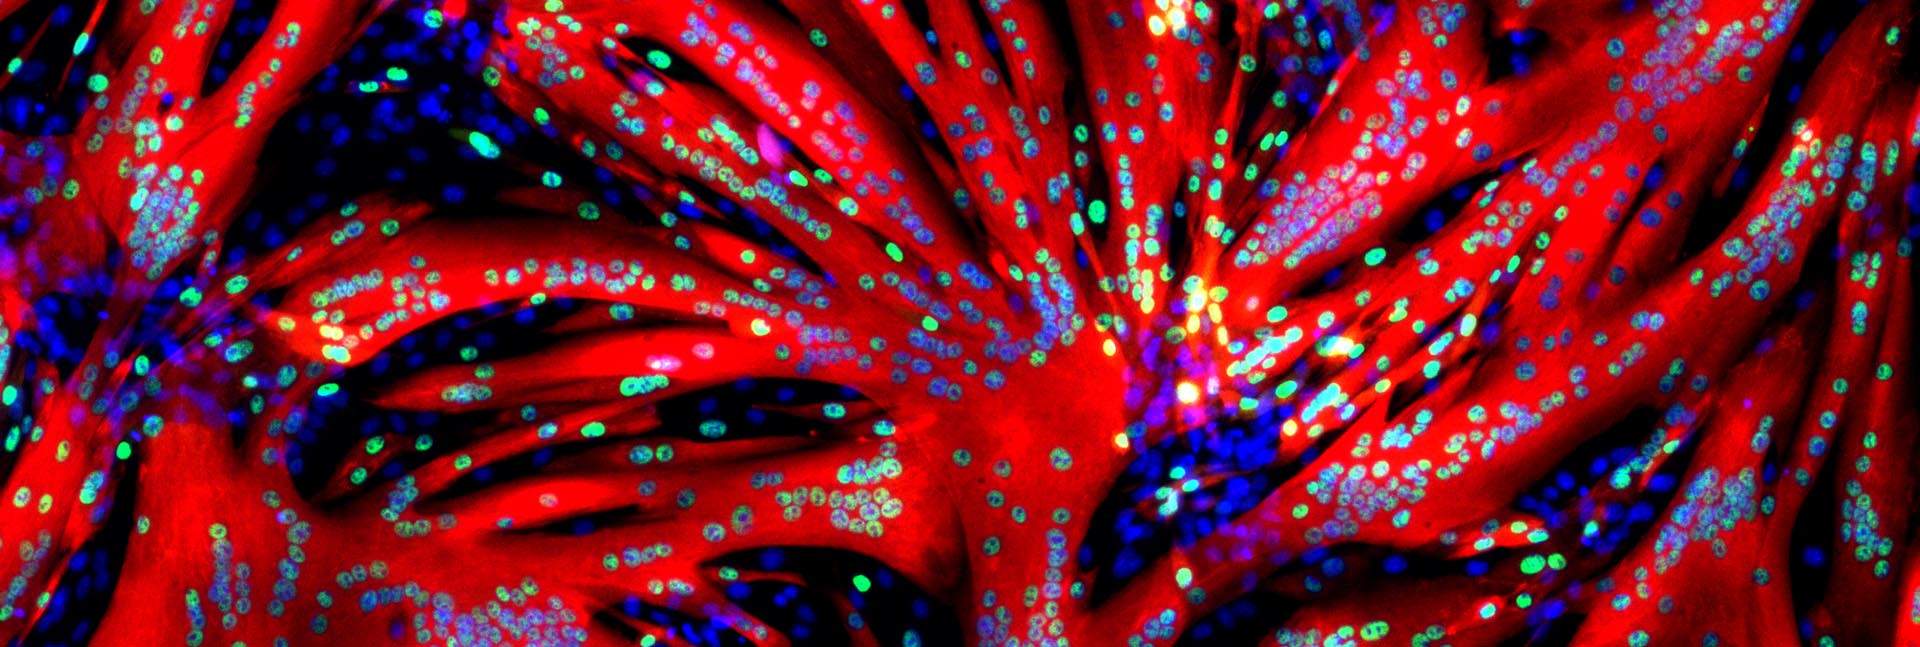 המראה המפתיע שהתגלה מבעד לעינית המיקרוסקופ: תאי גזע של שריר שמקורם בעכברים עברו תהליך מהיר של איחוי ויצירת סיבי שריר (באדום) מרובי גרעינים (הנקודות הכחולות) לאחר שנחשפו במשך 24 שעות למולקולה החוסמת את האנזים ERK // ד"ר תמר איגלר, מעבדת המחקר של פרופ' אלדד צחור